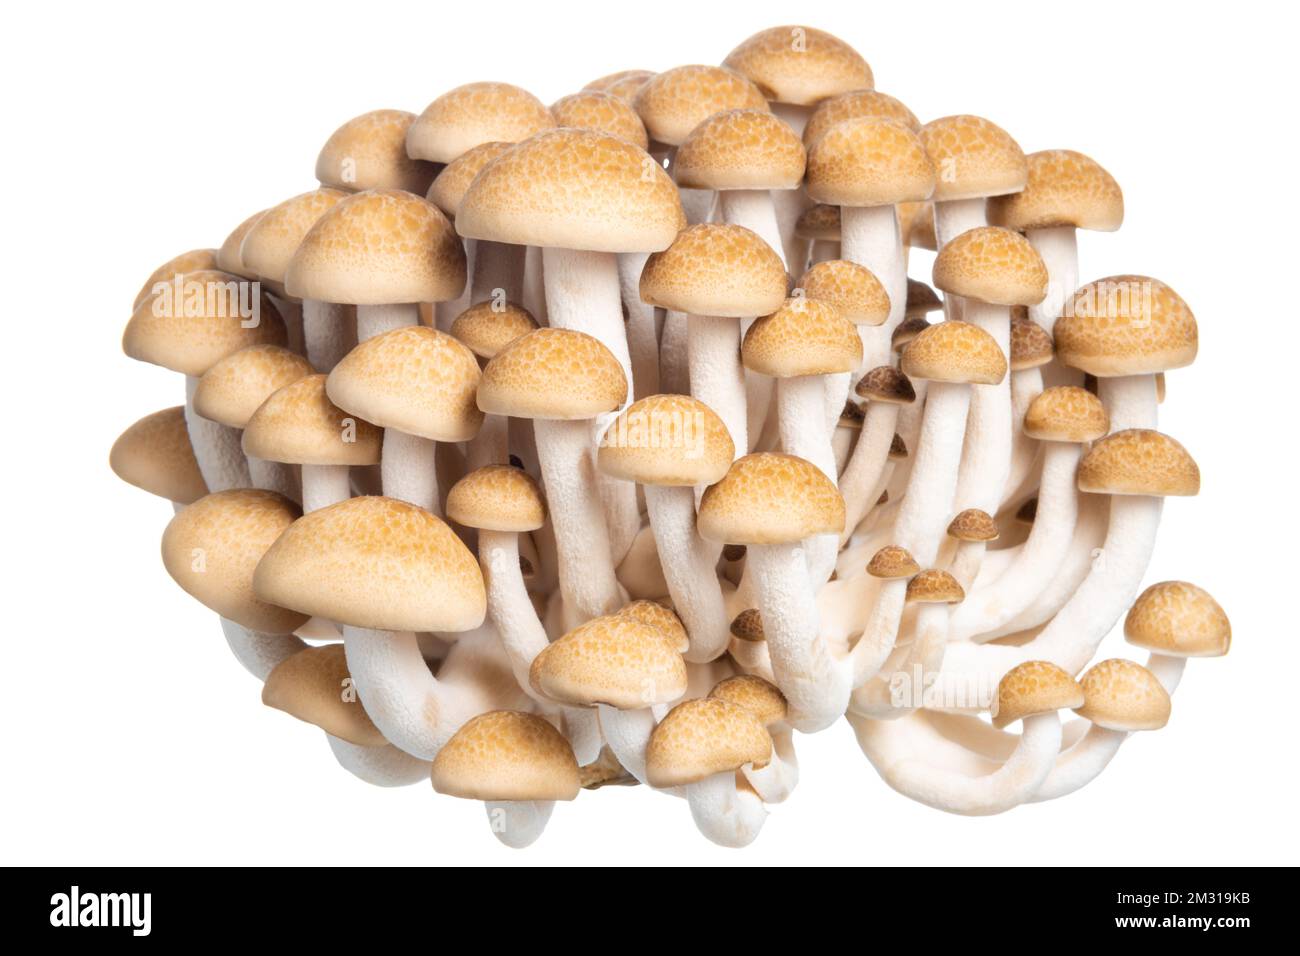 Gruppo di funghi Hon shimeji commestibili isolati su fondo bianco Foto Stock